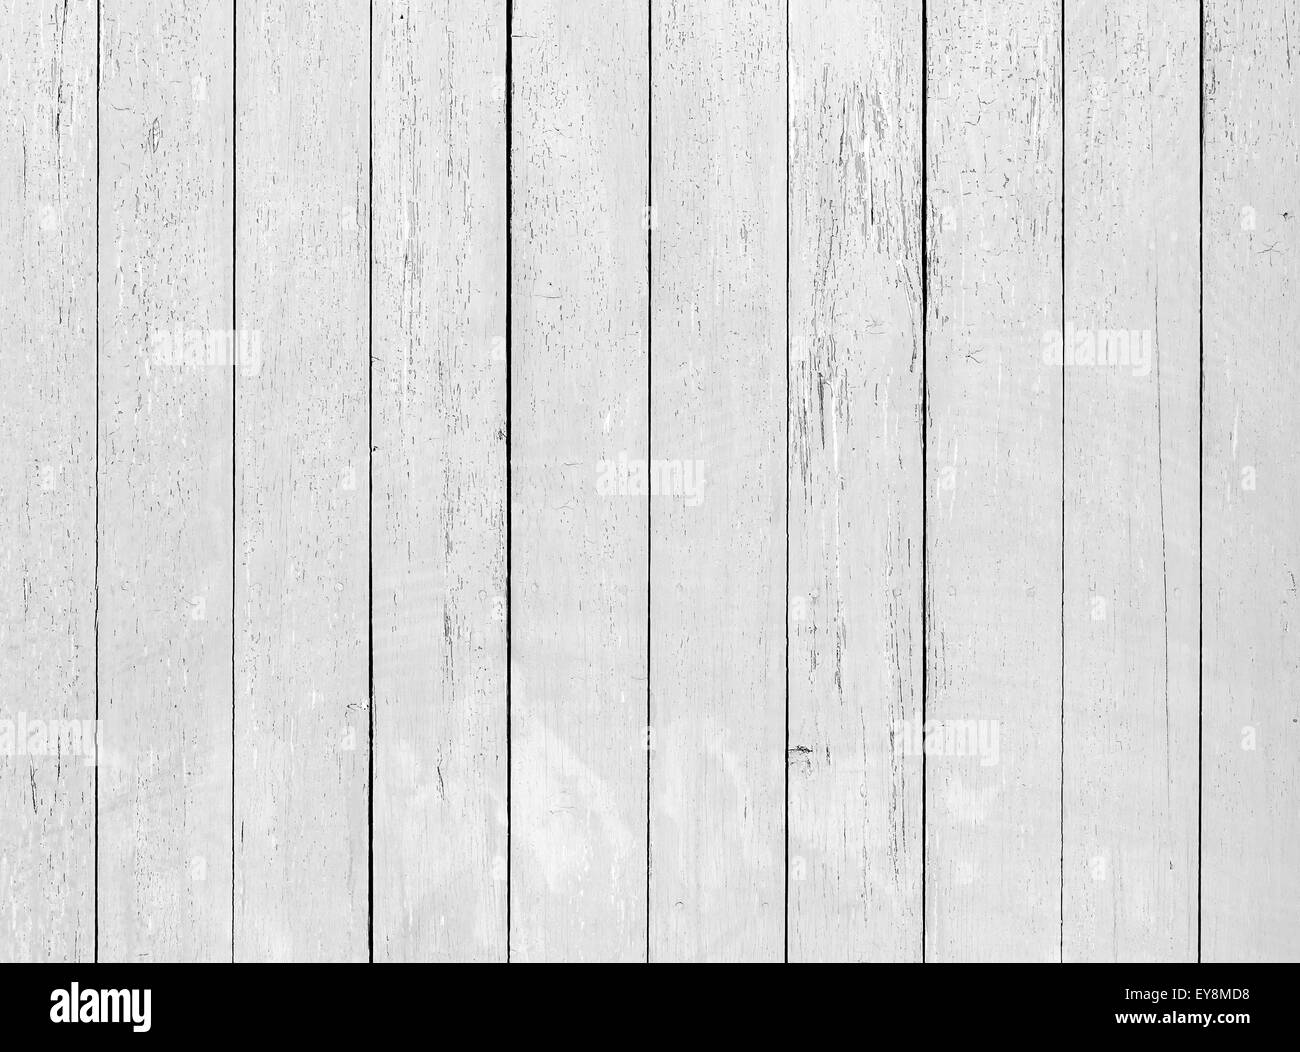 Alte weiße Holzwand mit rissigen Lack, detaillierte Hintergrundtextur Foto Stockfoto